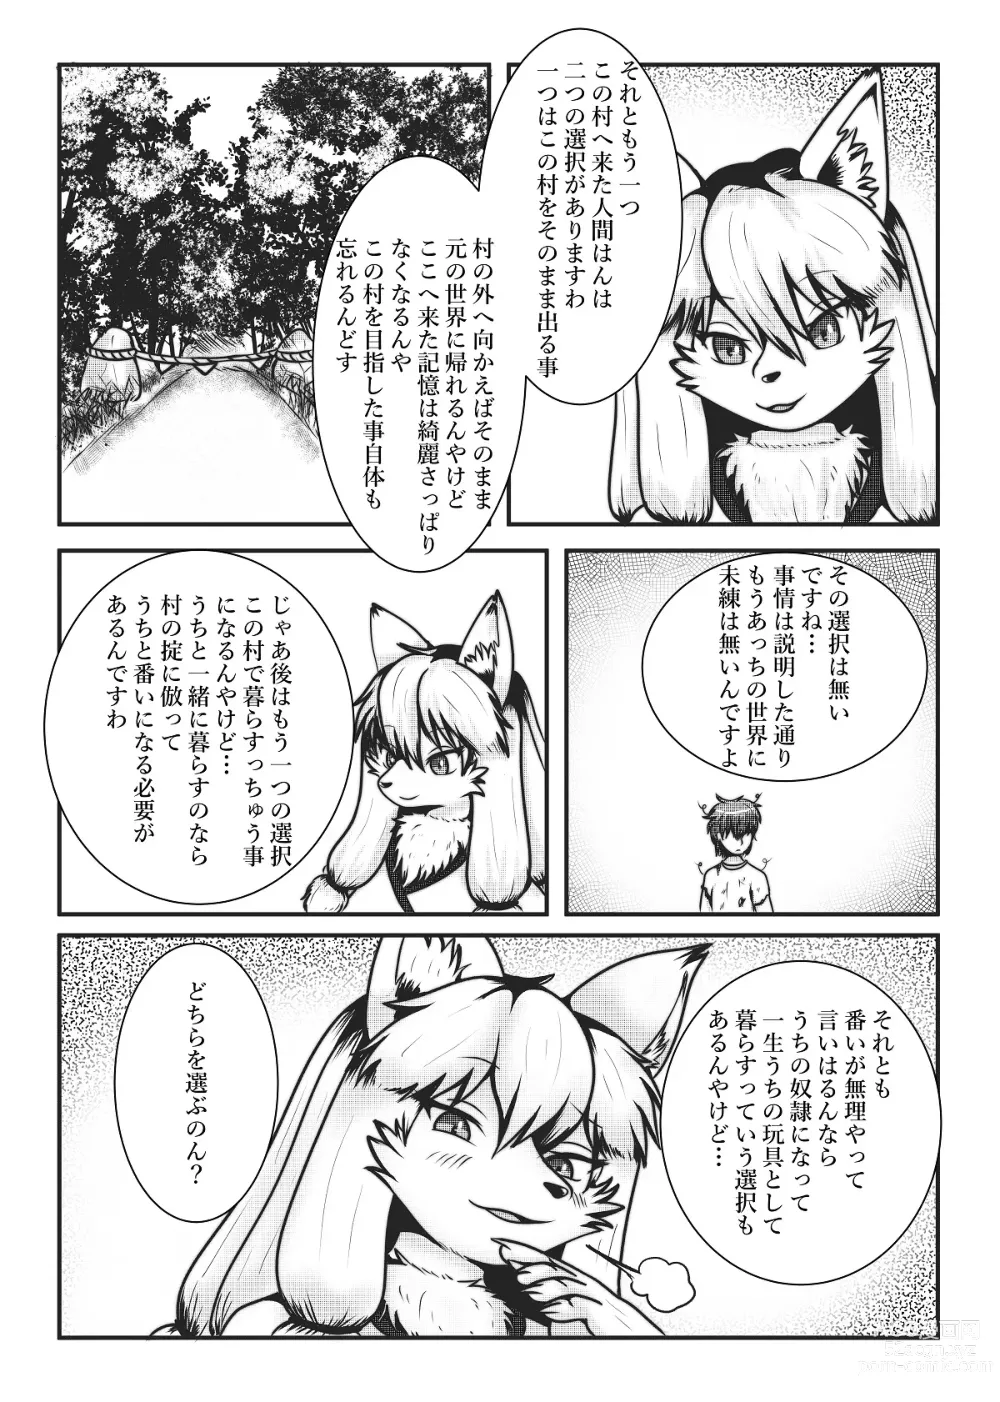 Page 12 of doujinshi Kyoju mura